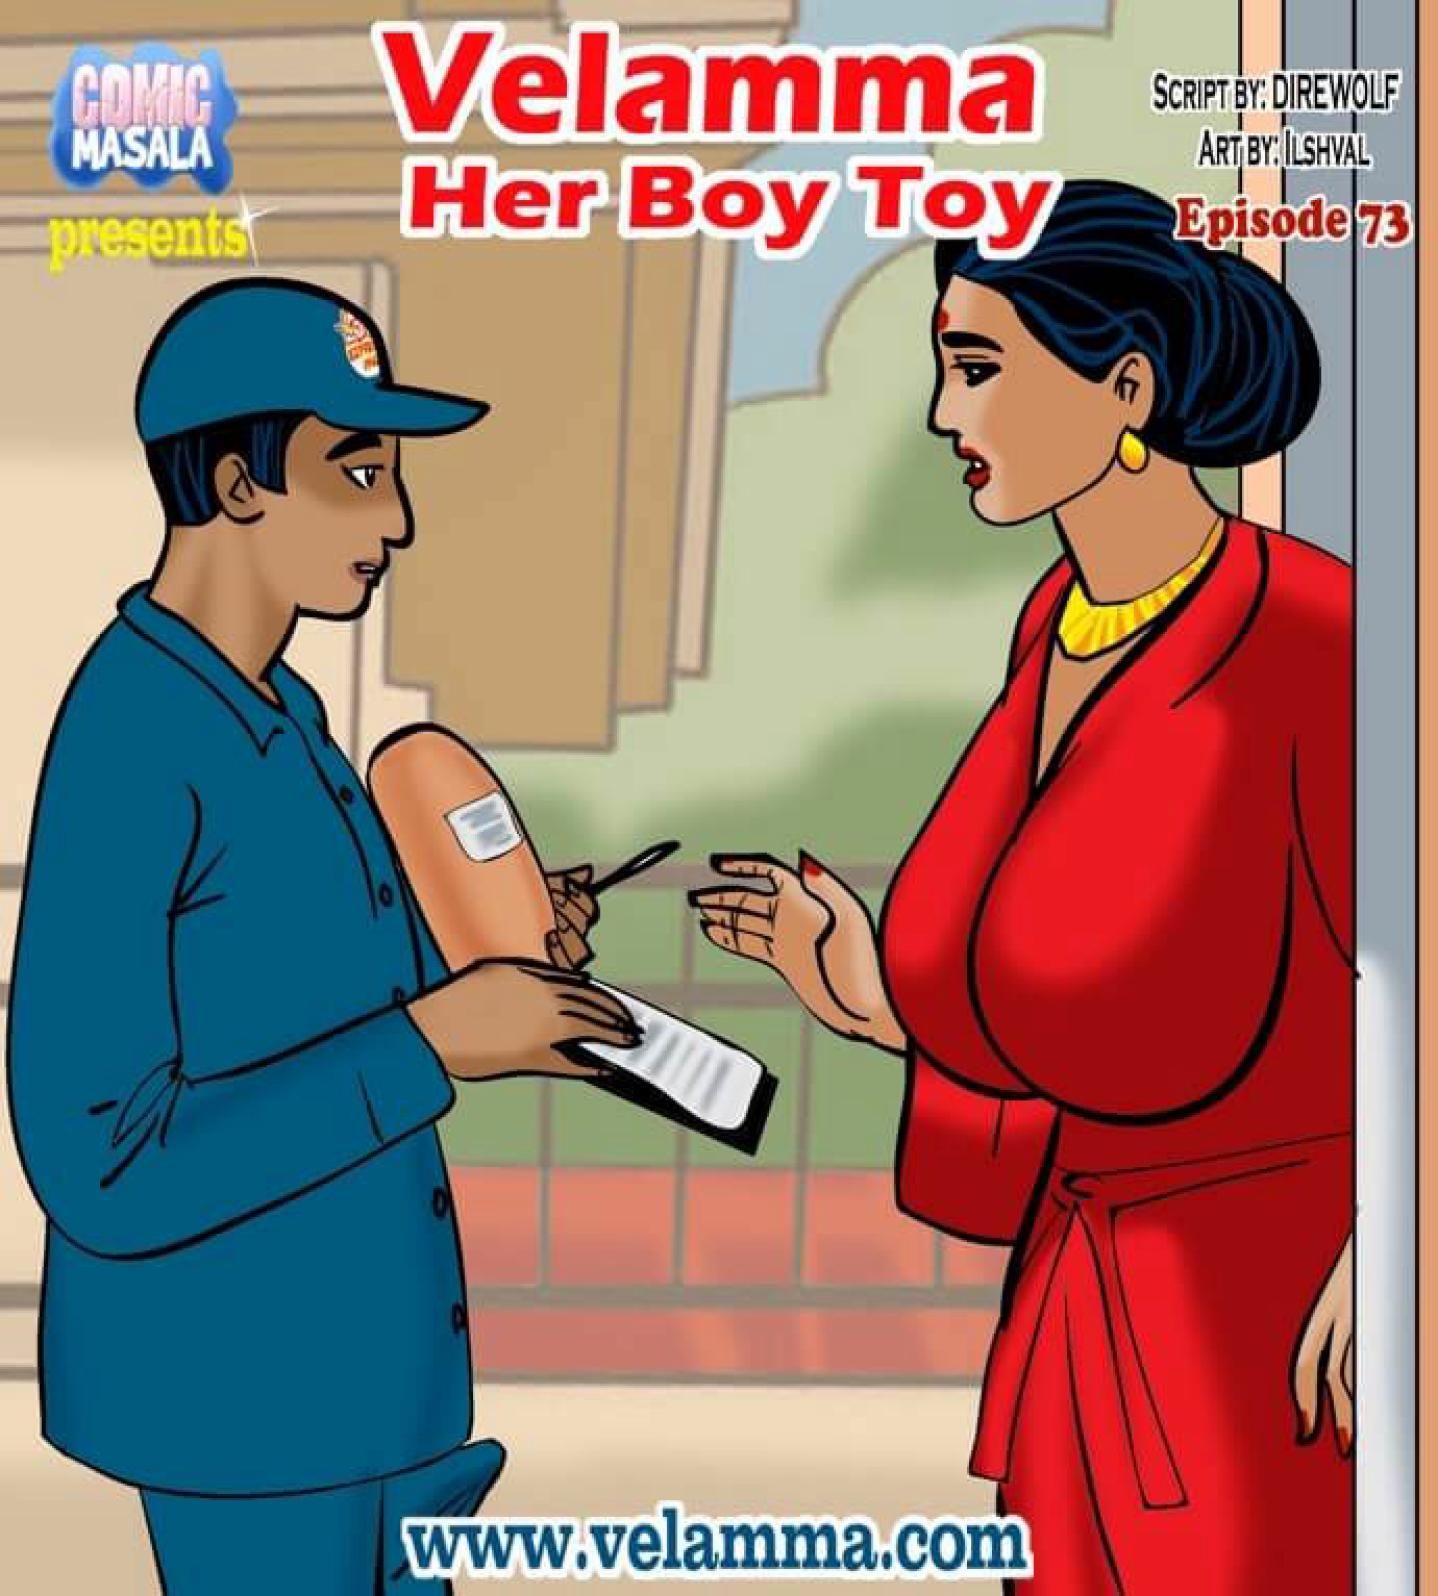 Velamma 73 Her Boy Toy page 1